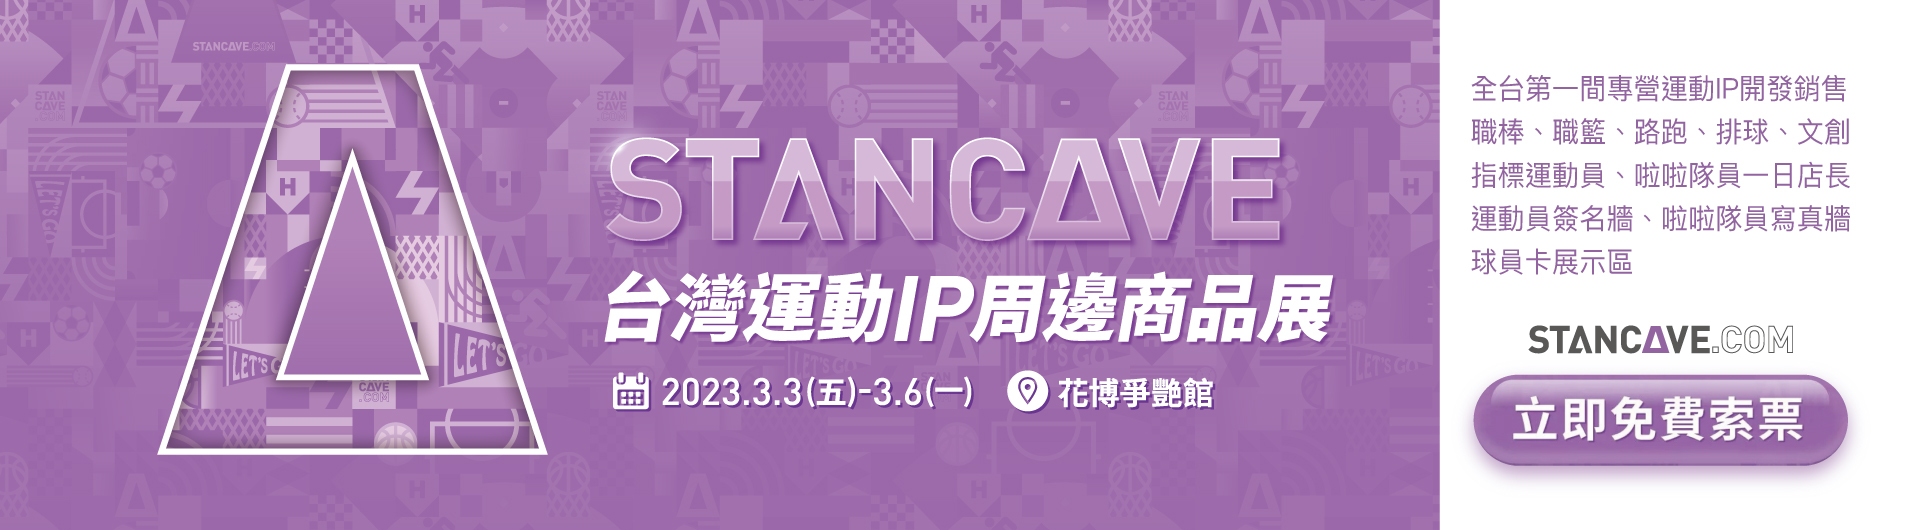 STANCAVE台灣運動IP周邊商品展